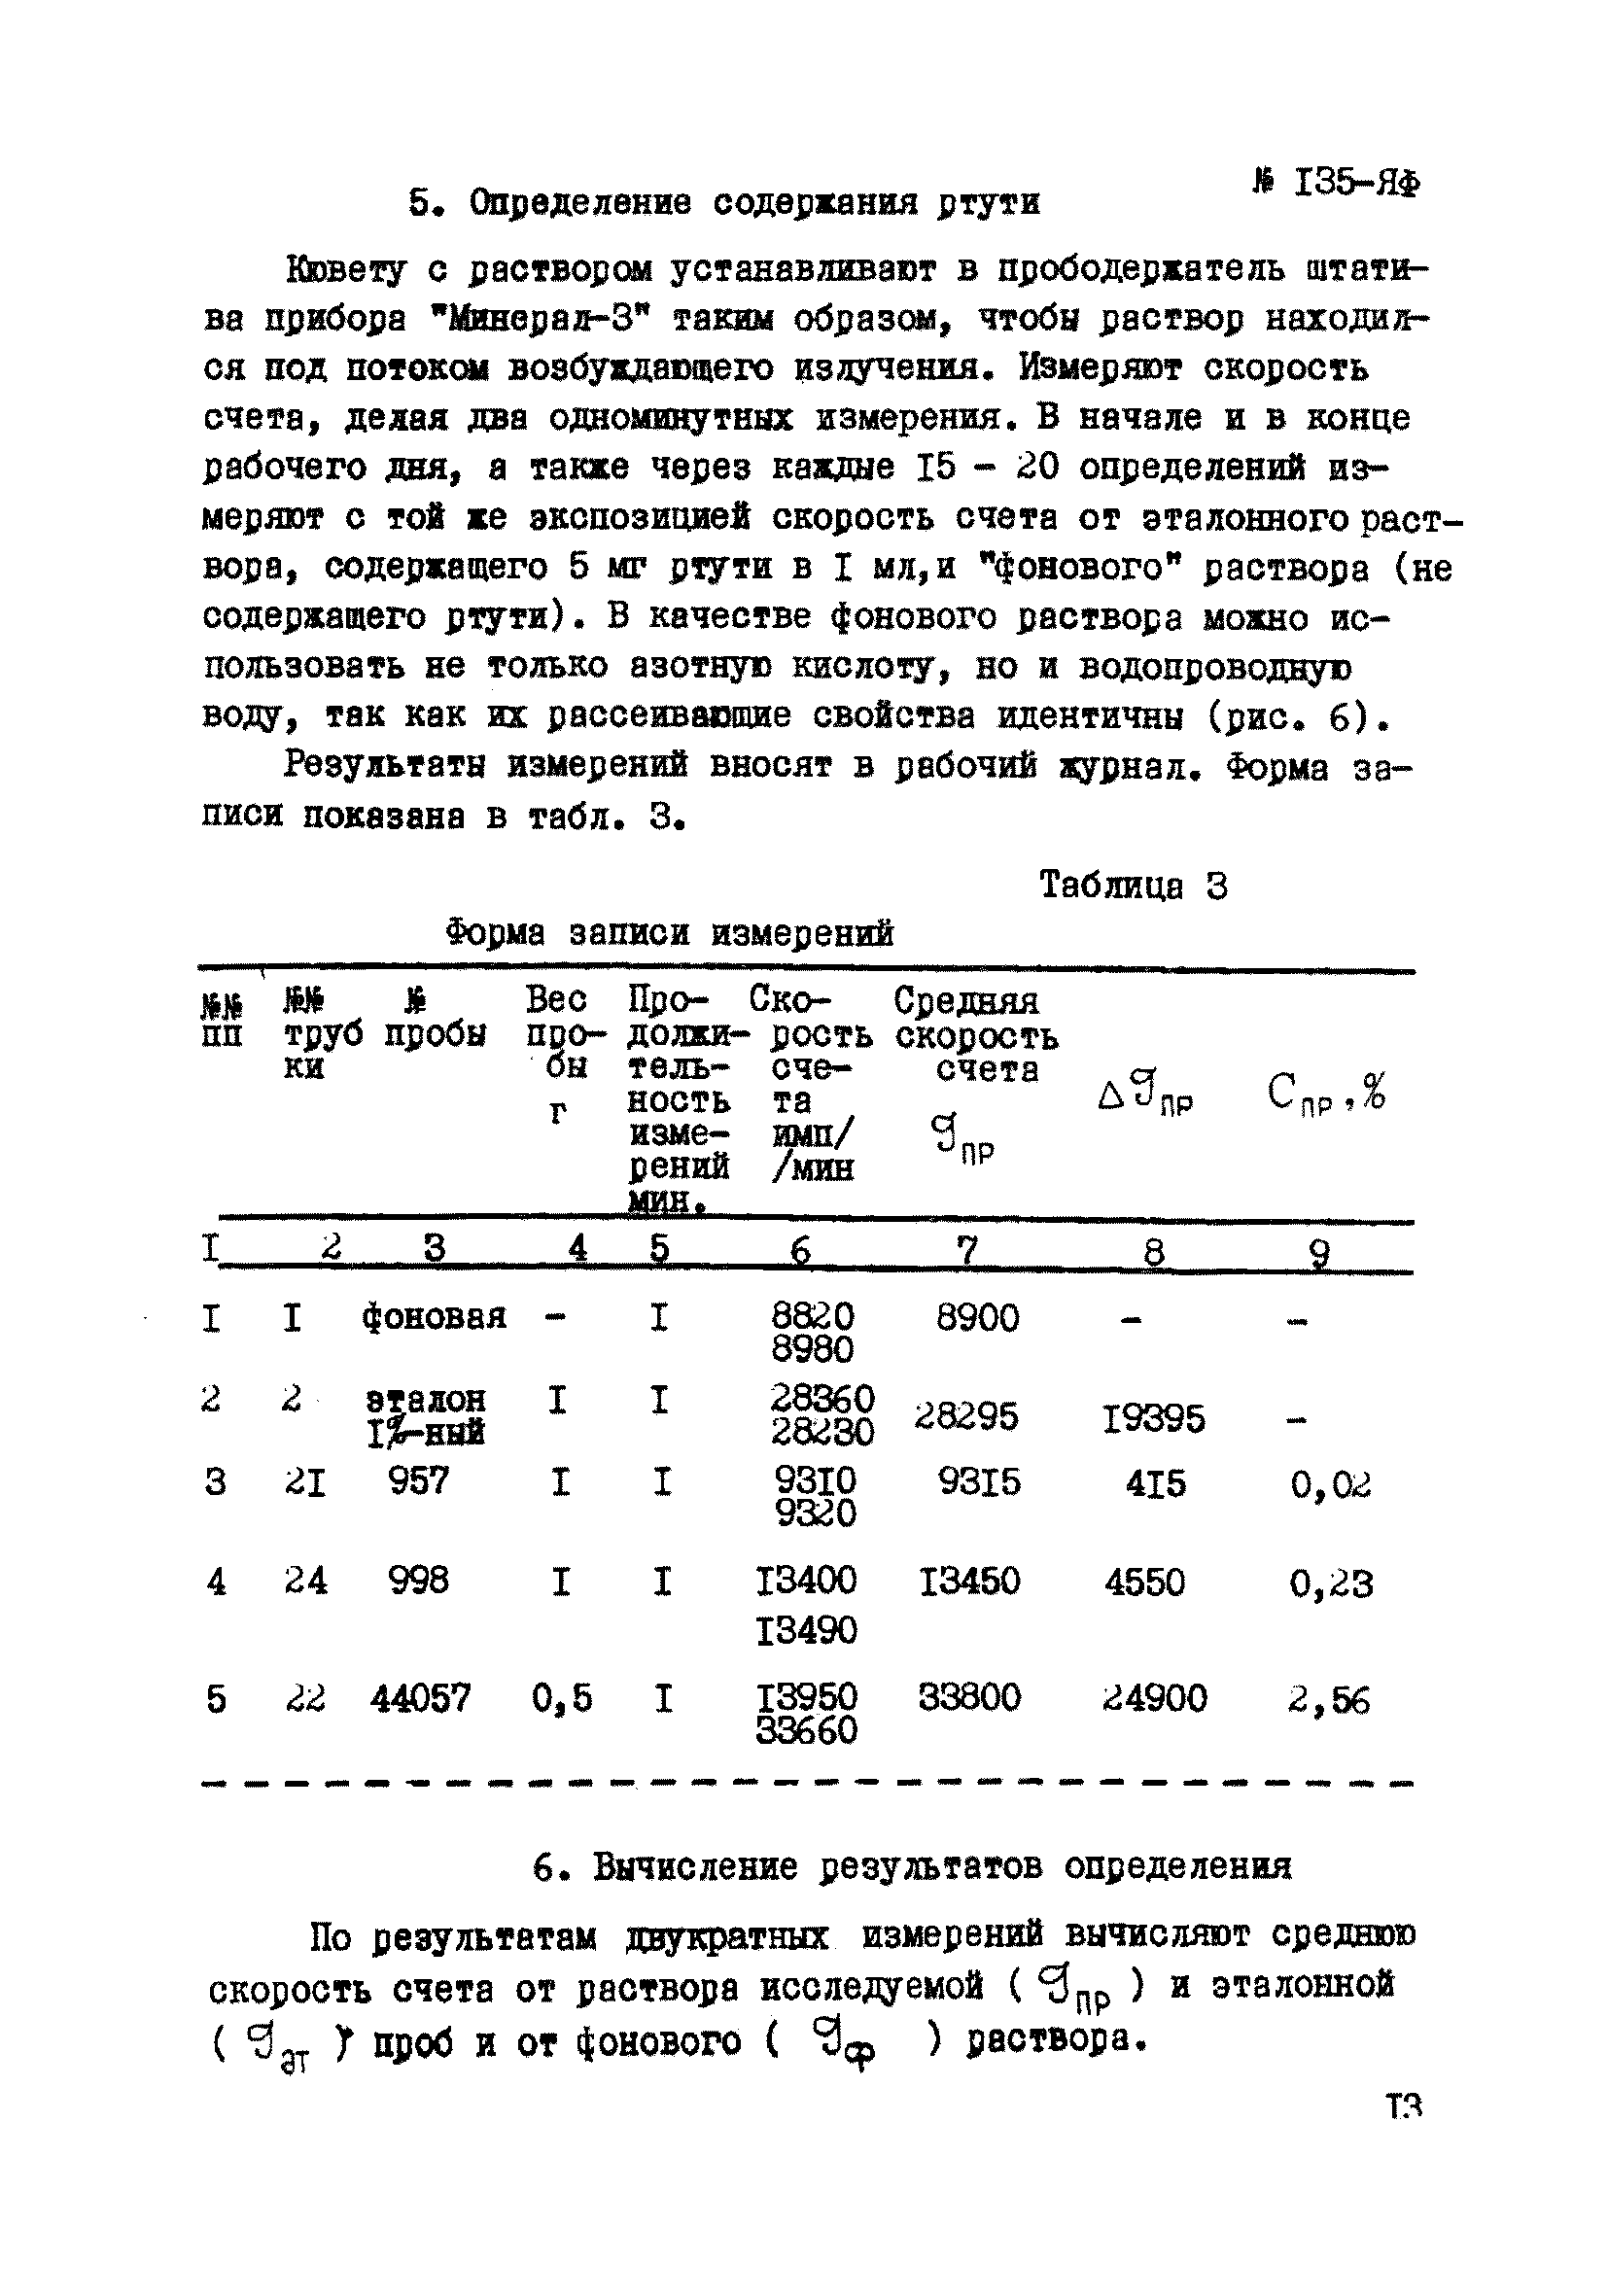 Инструкция НСАМ 135-ЯФ